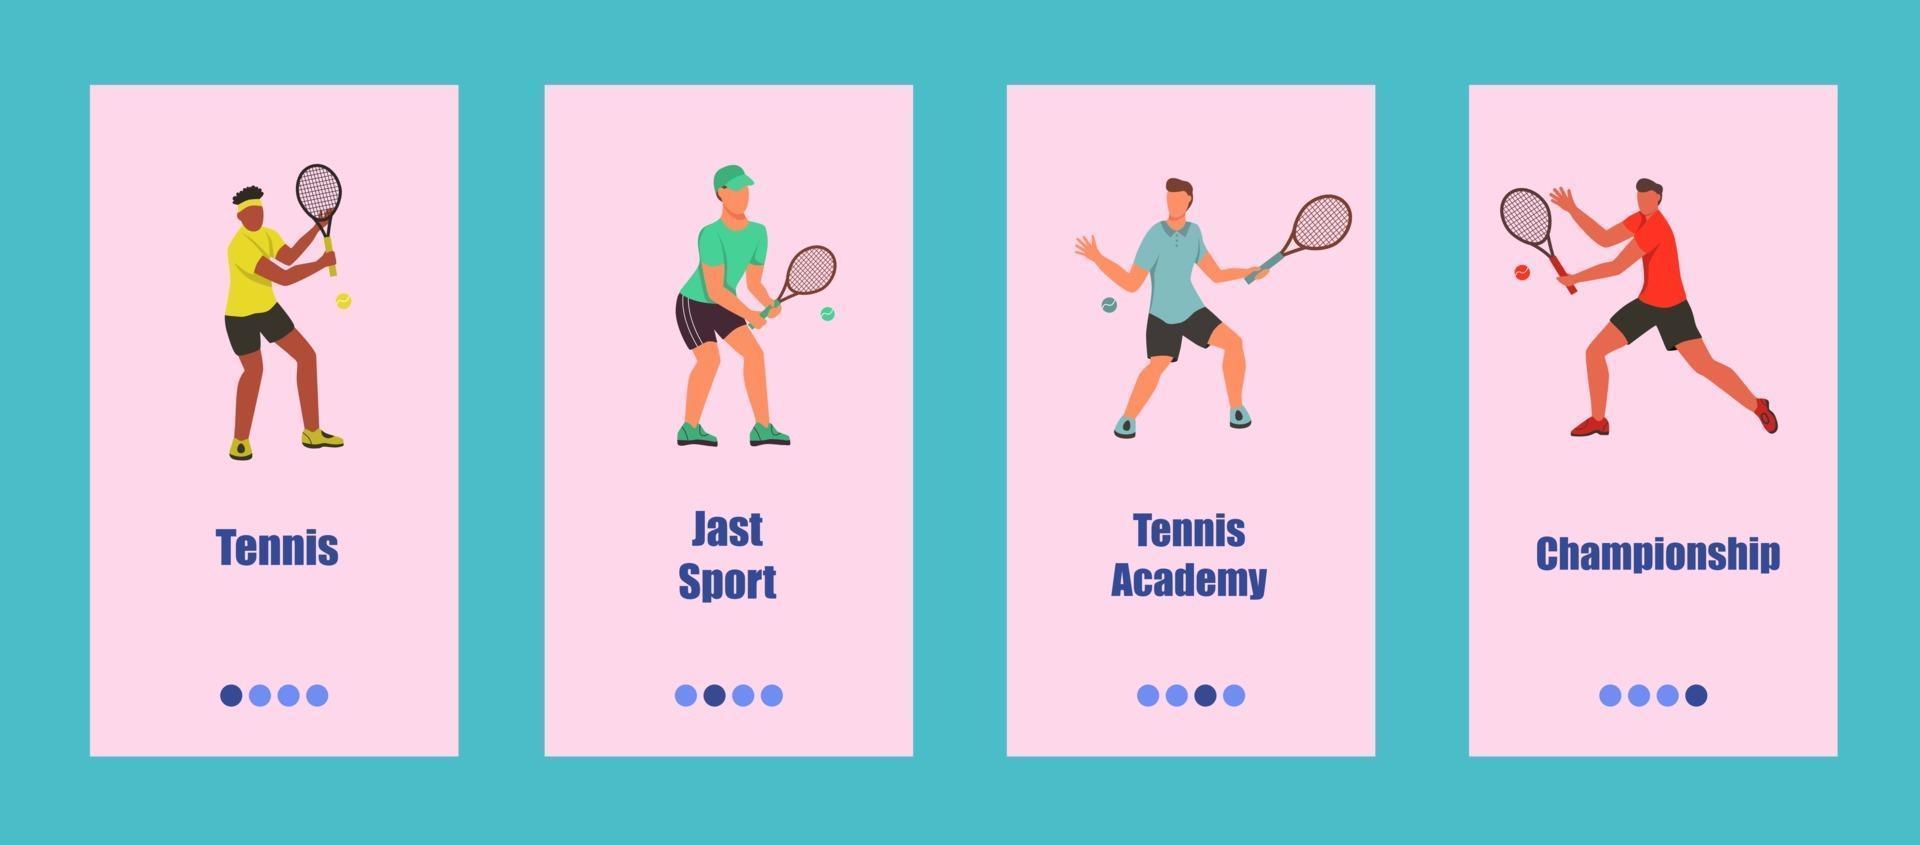 modello di app mobile da tennis. i giovani giocano a tennis. concetto di una scuola di tennis, competizione o campionato. illustrazione vettoriale piatta.